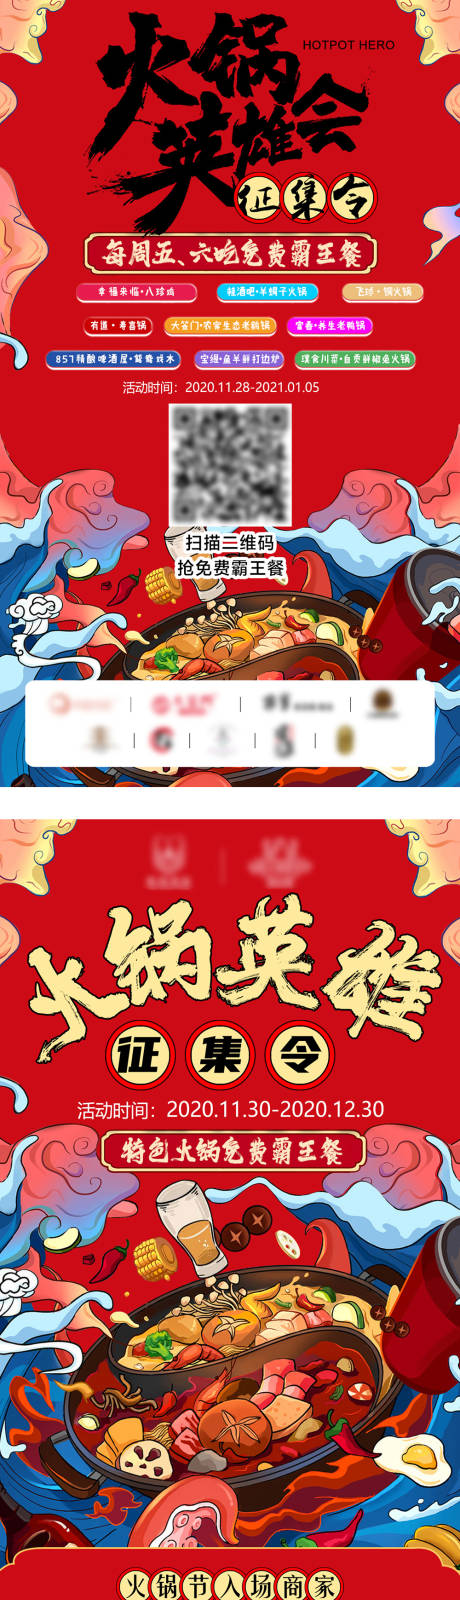 火锅节霸王餐英雄会商家宣传海报